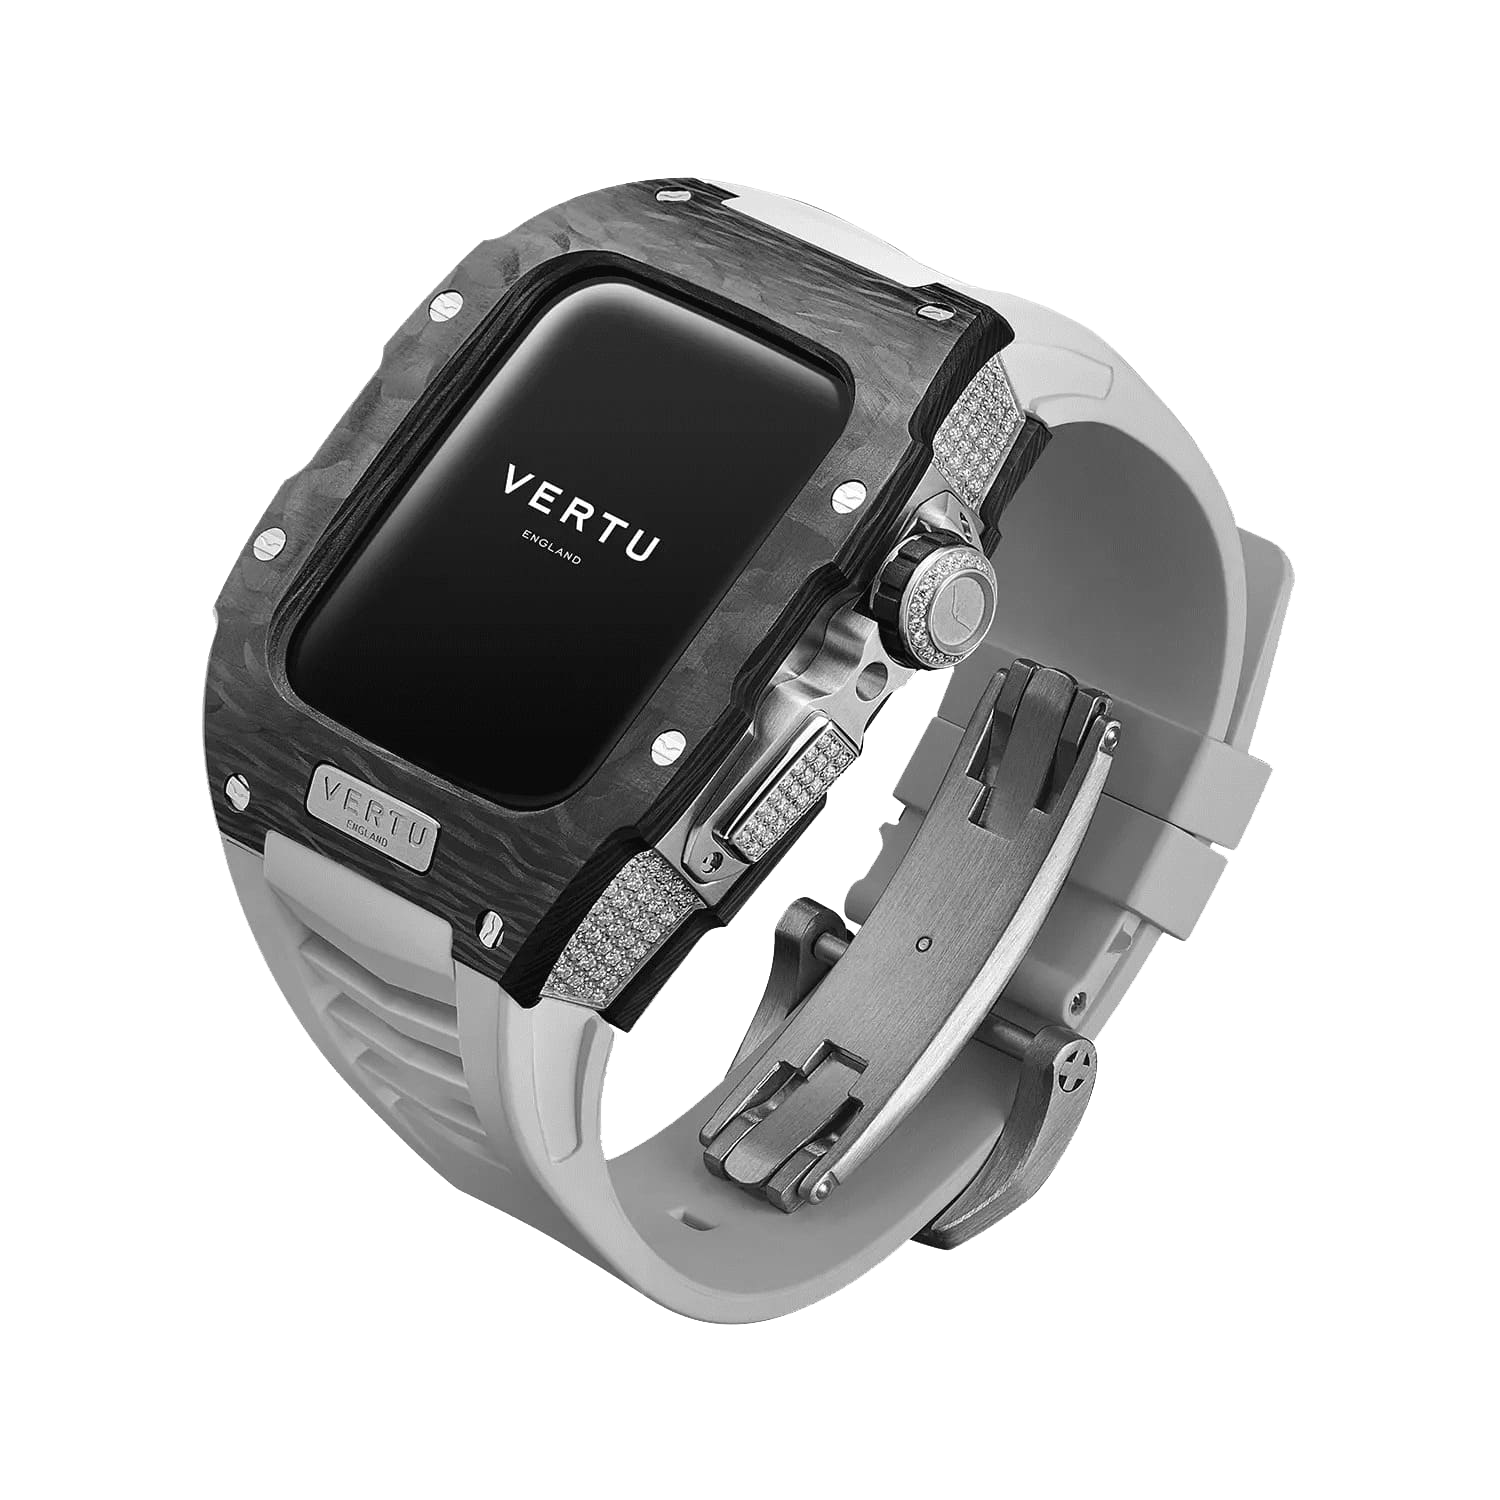 METAWATCH Black Diamond Smartwatch - White Strap